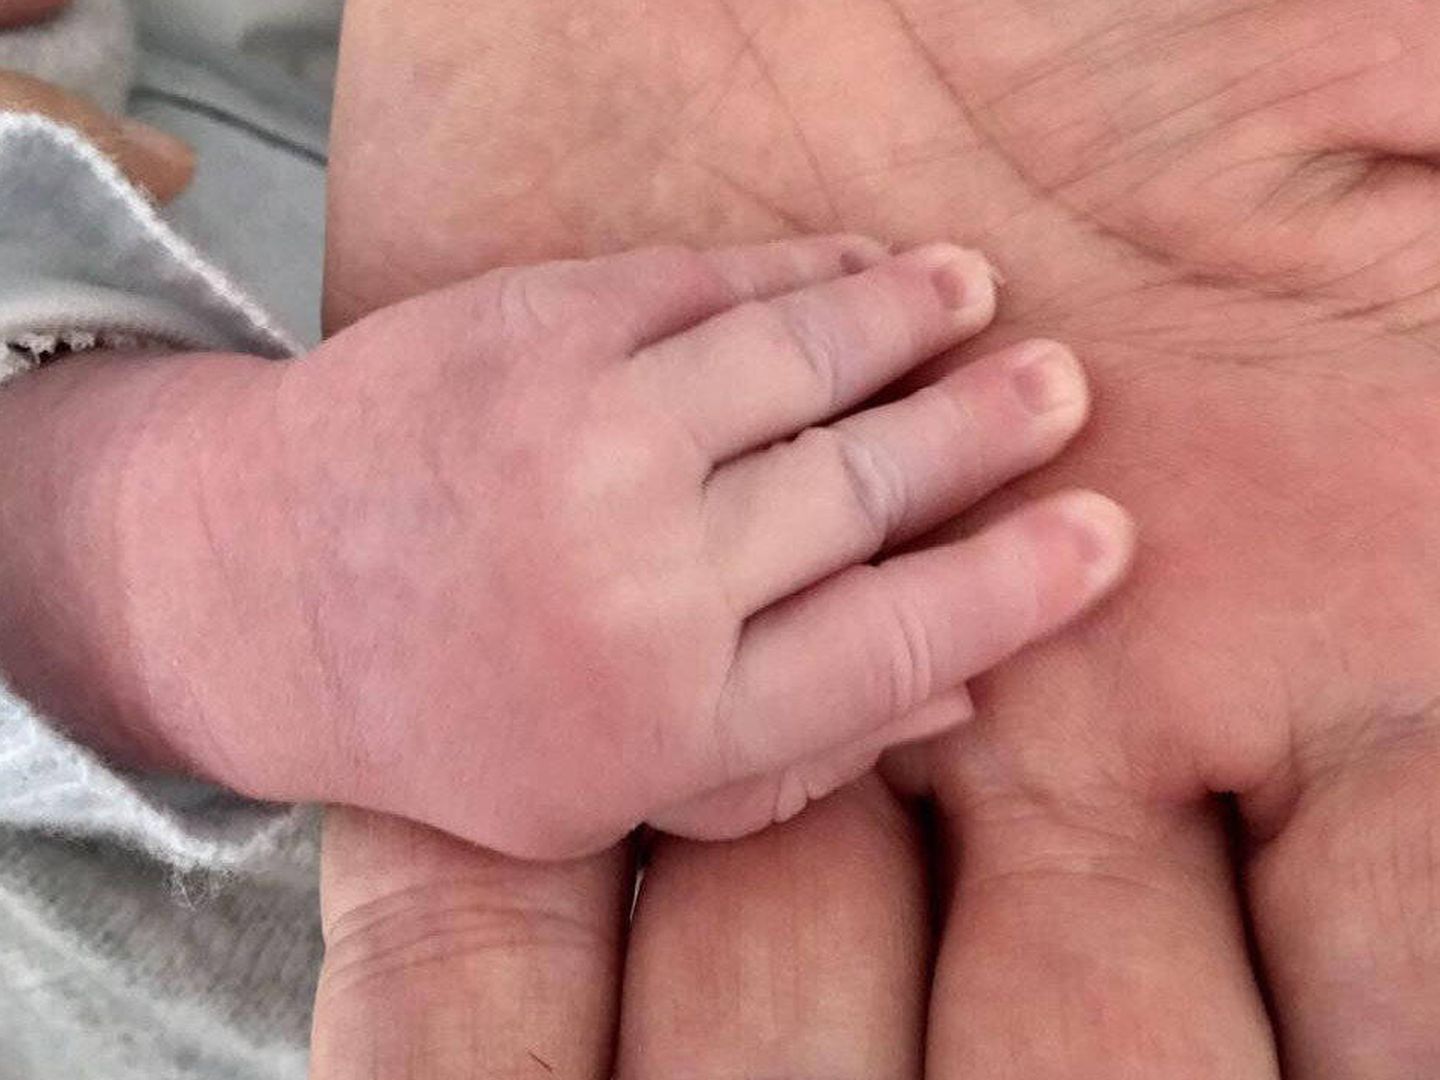  La mano de Feijóo y de su hijo, en una imagen de Twitter.